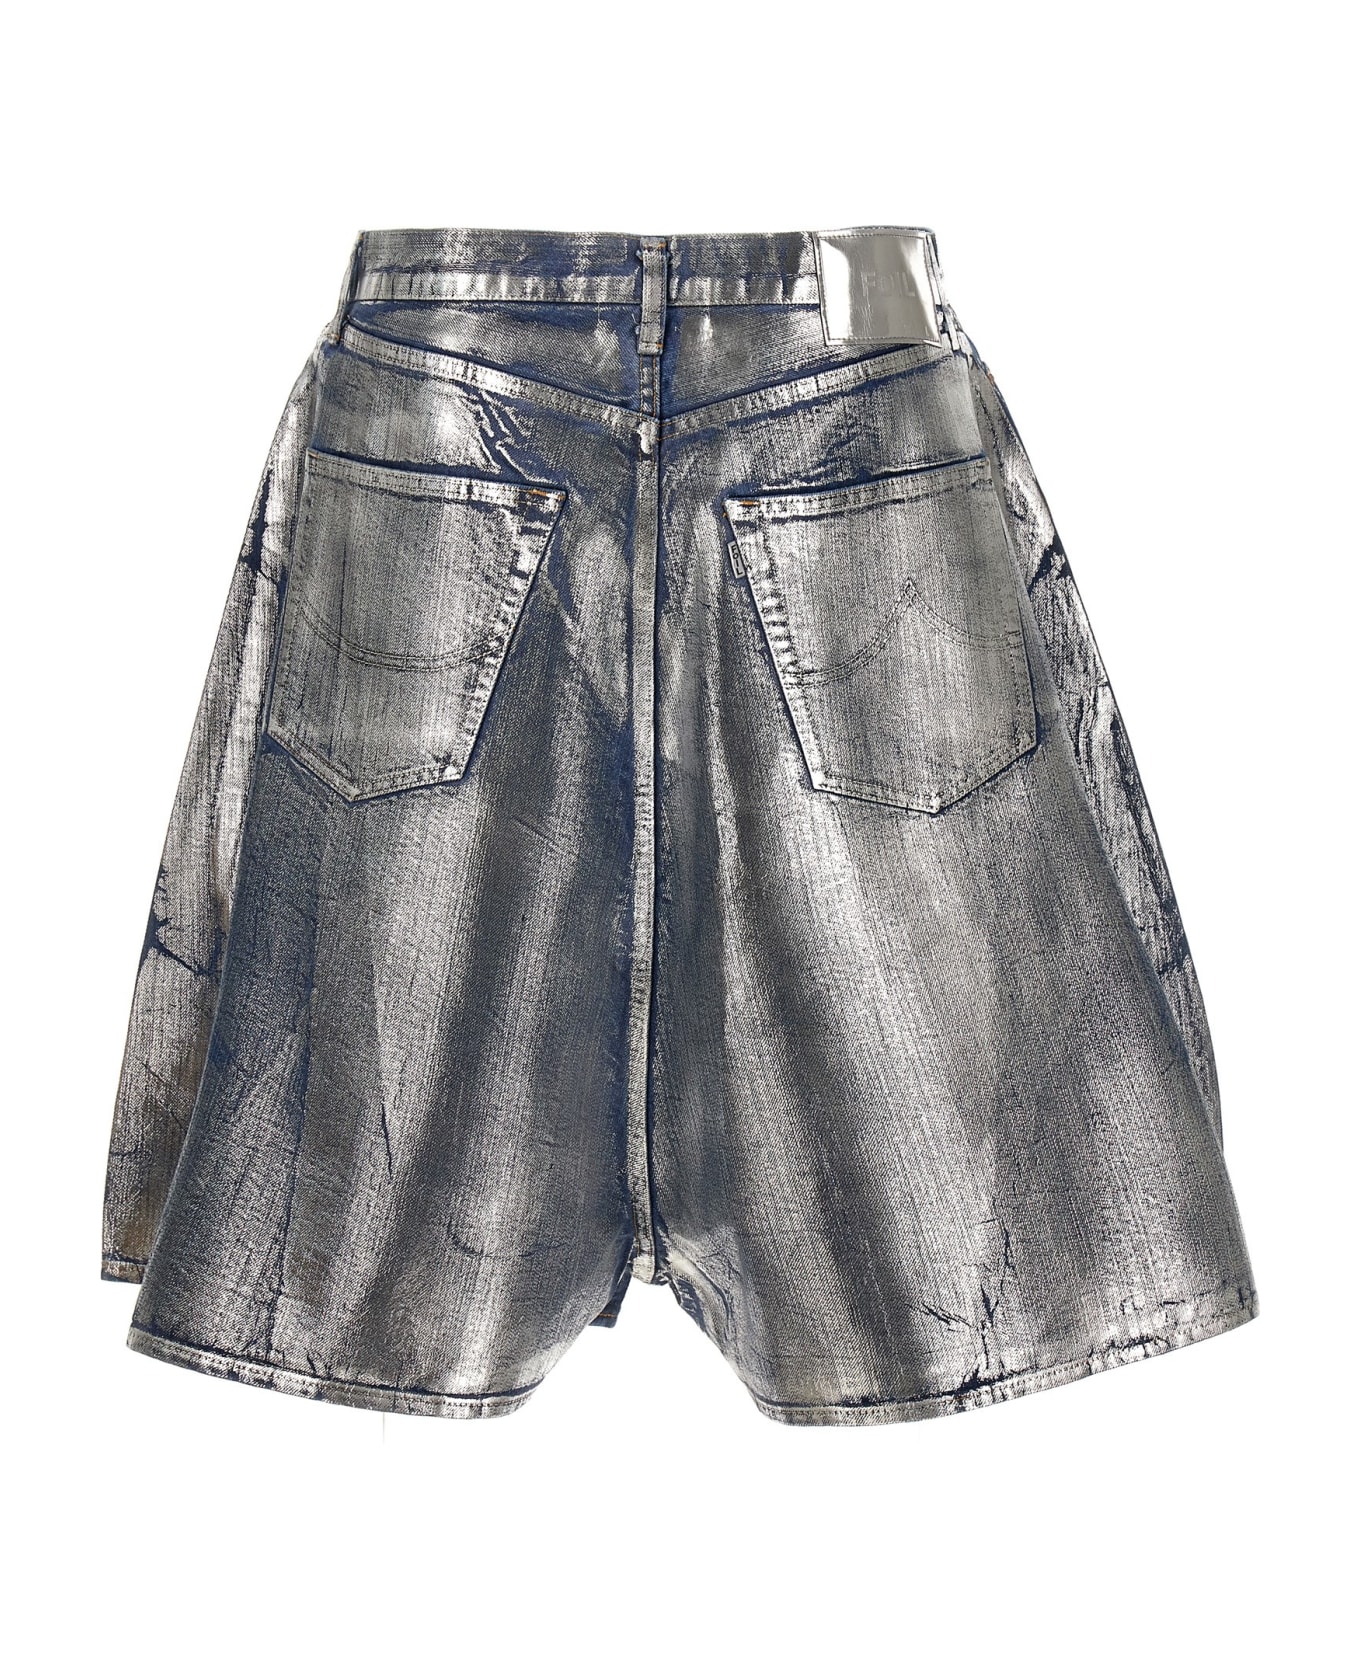 doublet 'foil Denim' Bermuda Shorts - Silver ショートパンツ